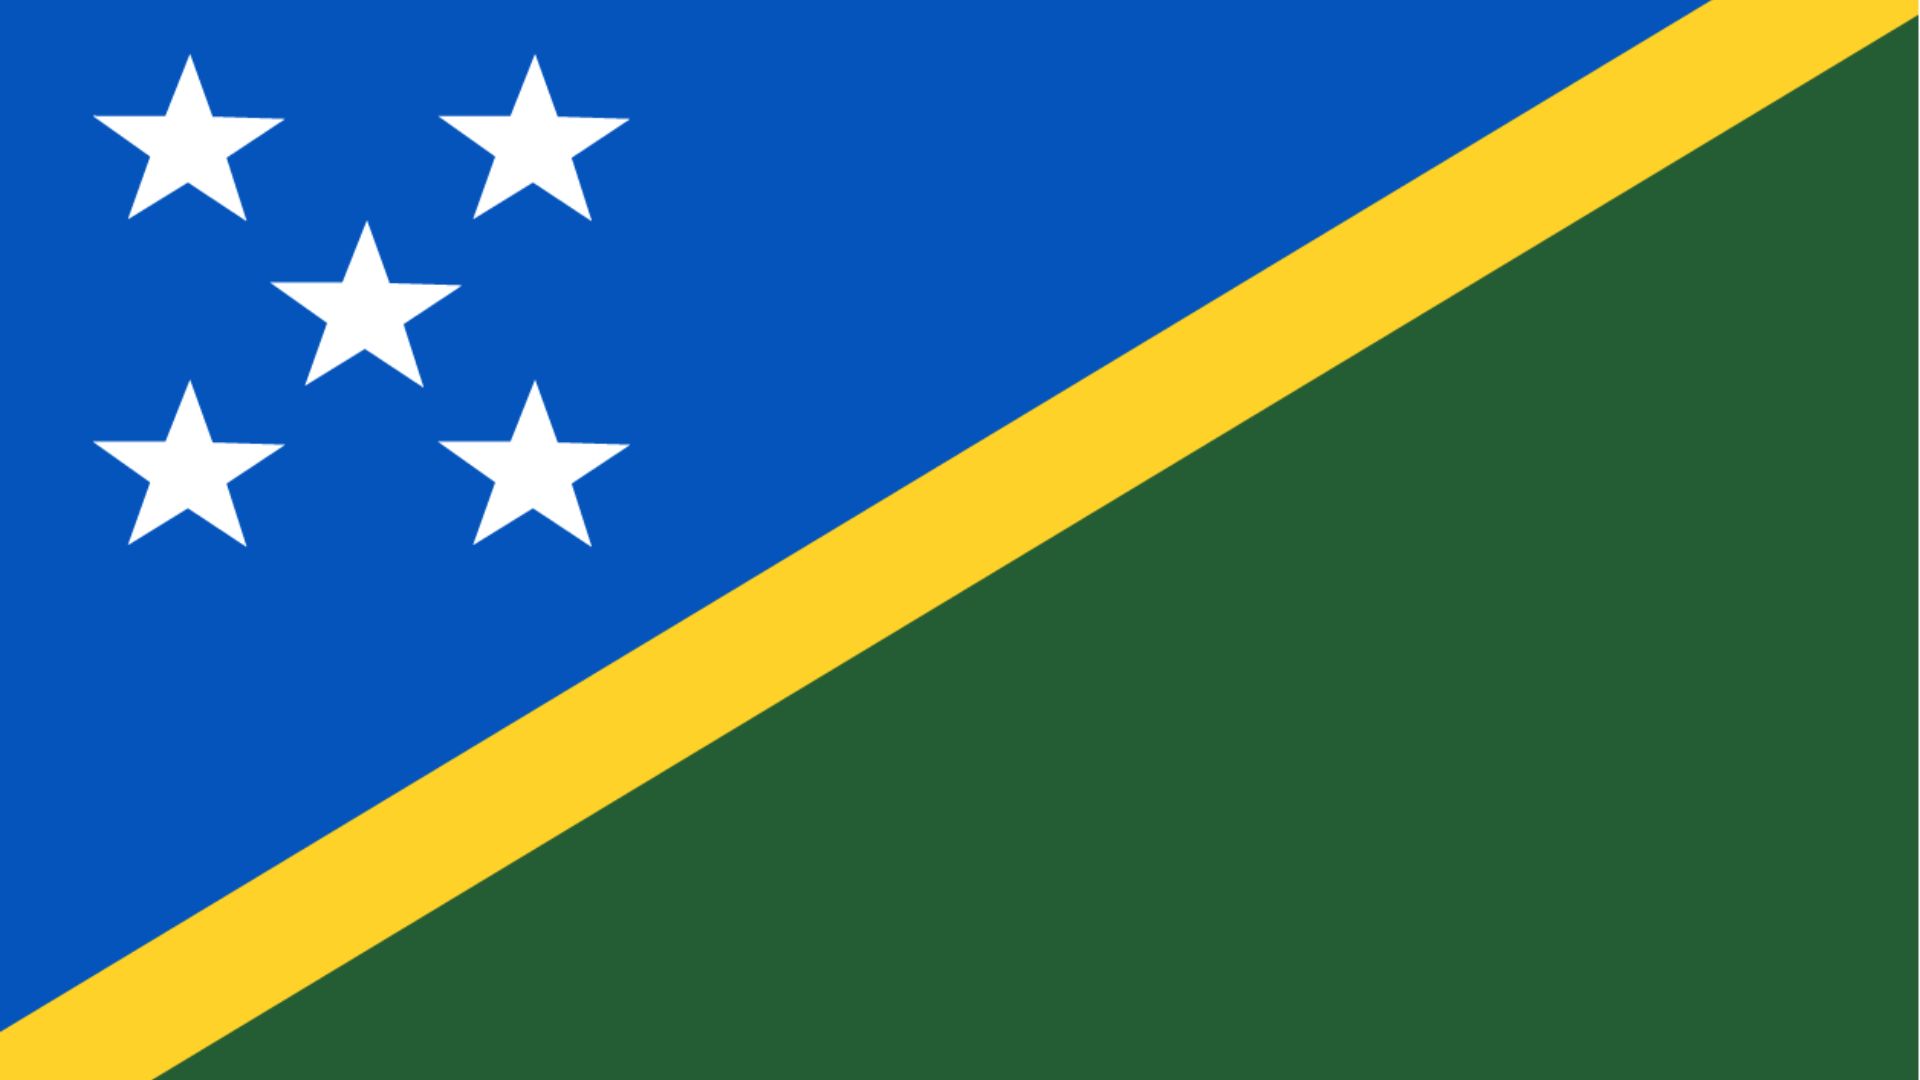 A bandeira das Ilhas Salomão é composta por três cores: azul, verde e amarelo. O azul, supostamente representa o oceano circundante, enquanto que o verde representa a terra. A faixa amarela é simbólica da luz solar.